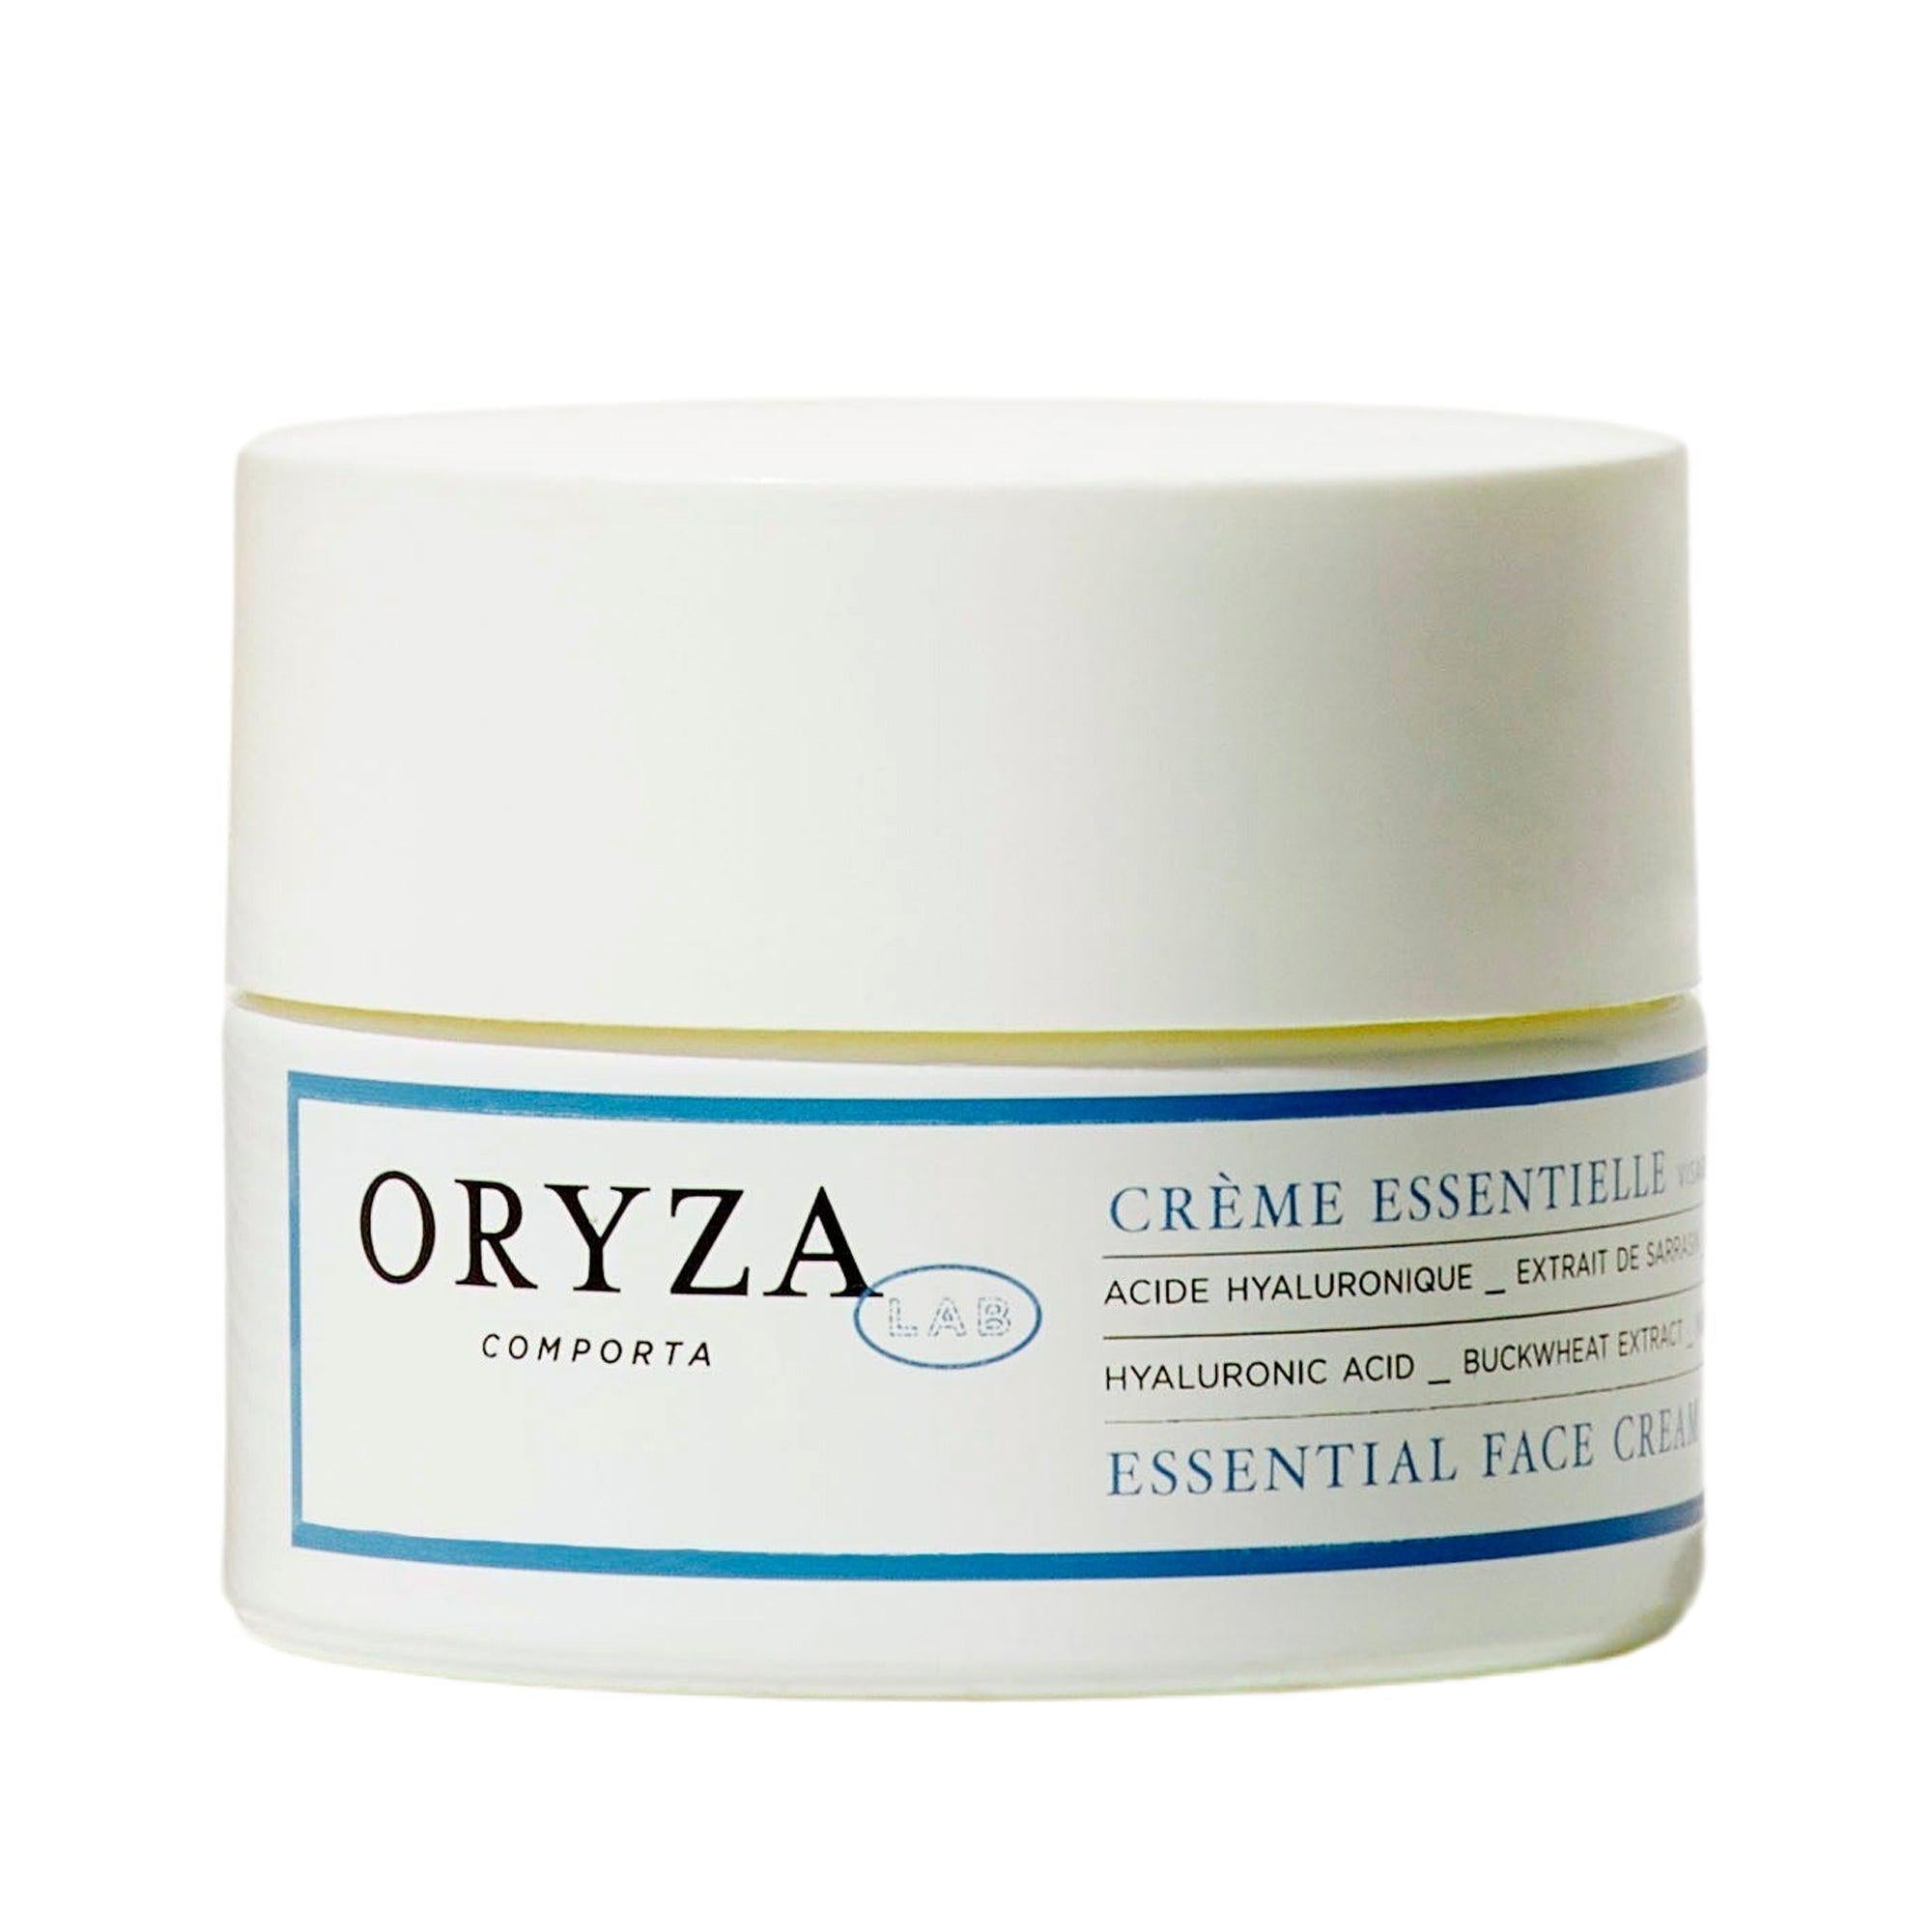 Indisponible - Crème Essentielle Unavailable - Essential Cream - Oryza Lab